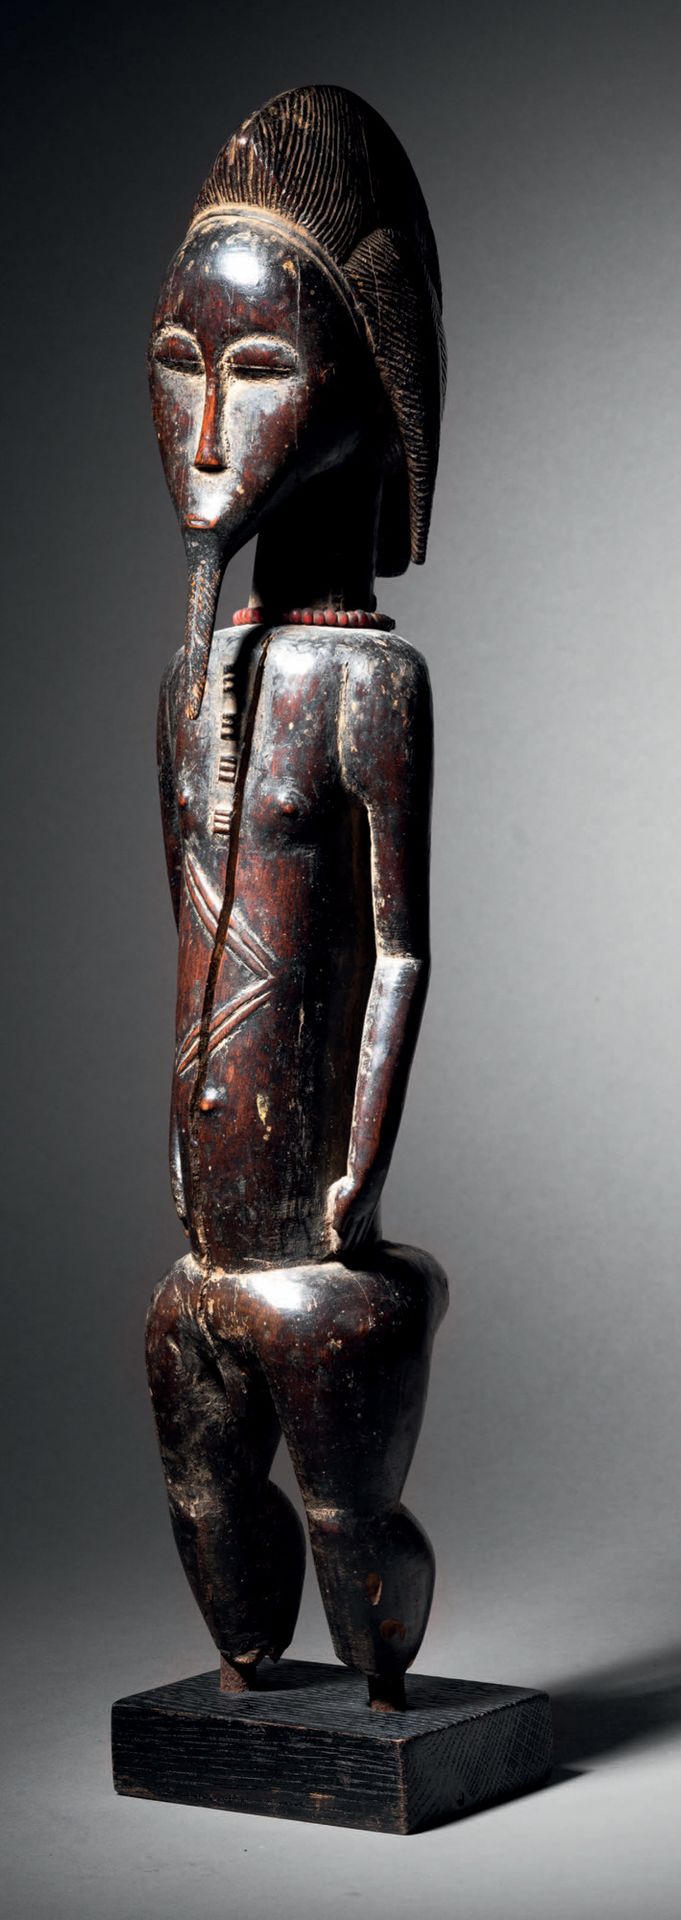 Null Statua Baule, Blolo bian, Costa d'Avorio
Legno e perline
H. 40 cm
Figura Ba&hellip;